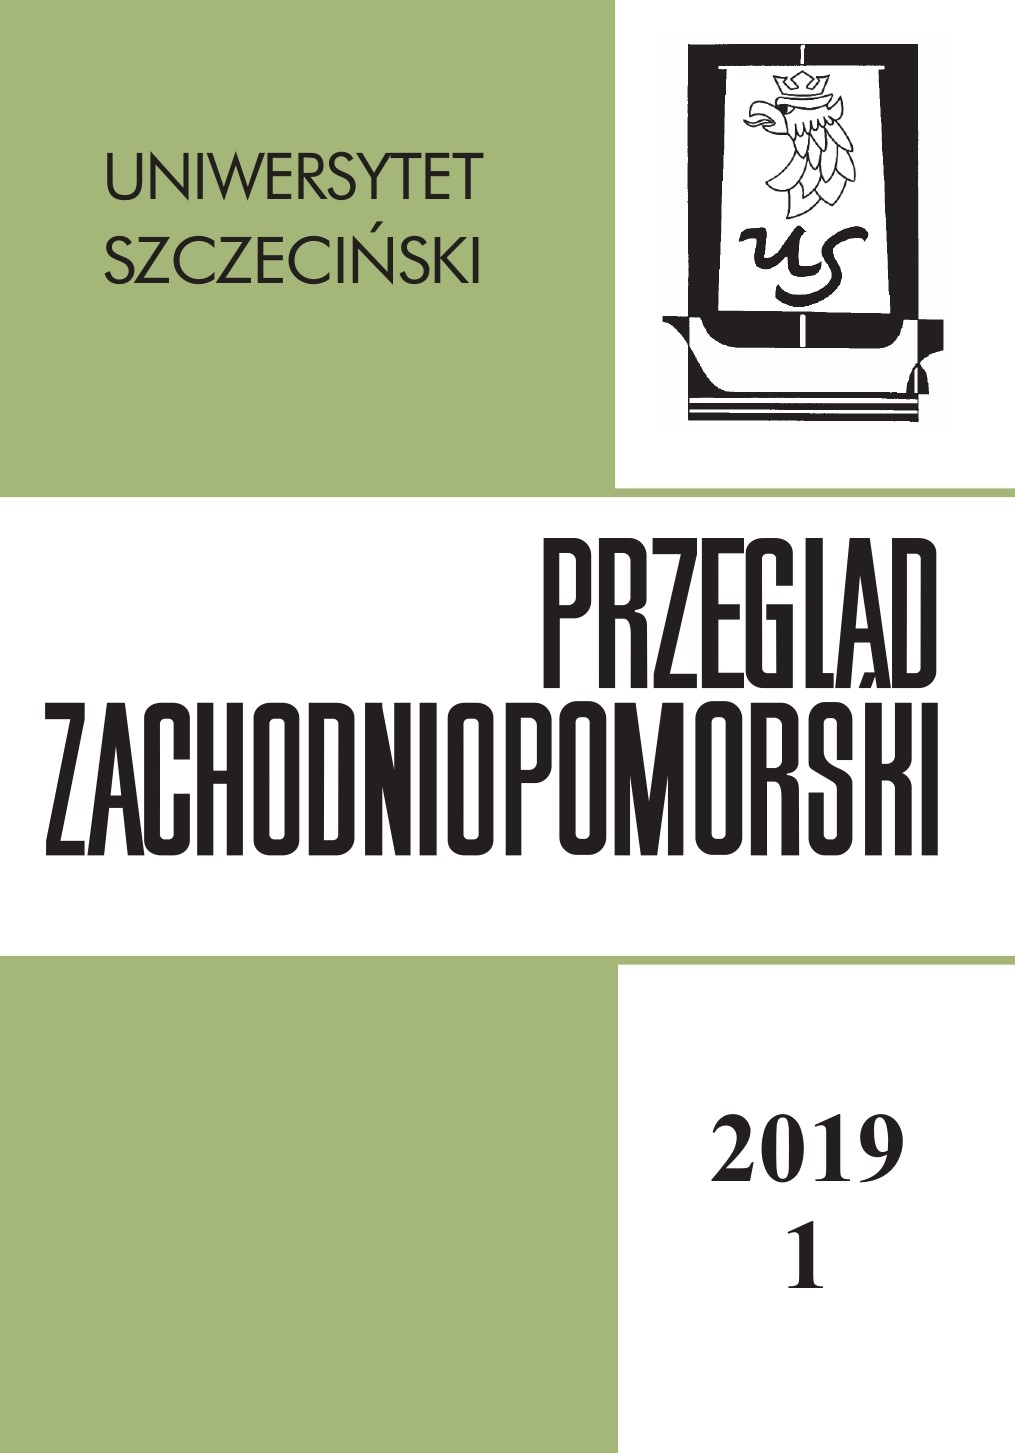 Szczecińskie czasopisma w przestrzeni społecznej, red. D. Dąbrowska, P. Olechowska, I. Sokalski, Książnica Pomorska, Szczecin 2019